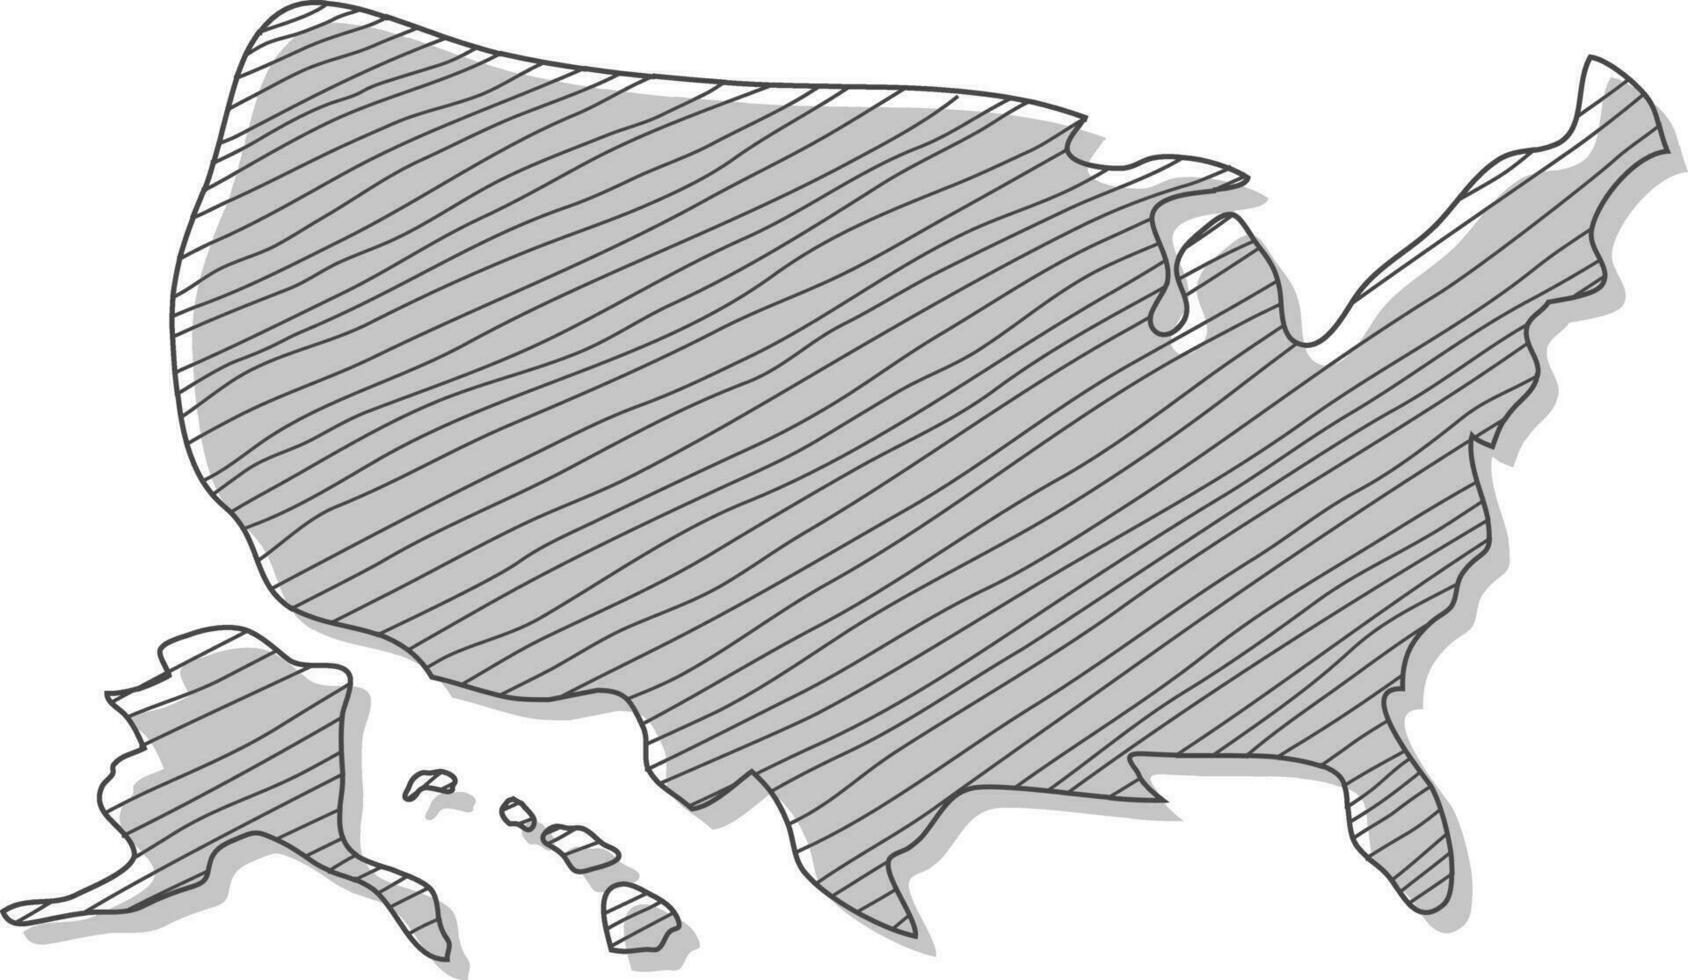 mano dibujado mapa de el unido estados de America. Estados Unidos mapa bosquejo. nosotros mapa mano dibujo. vector ilustración.